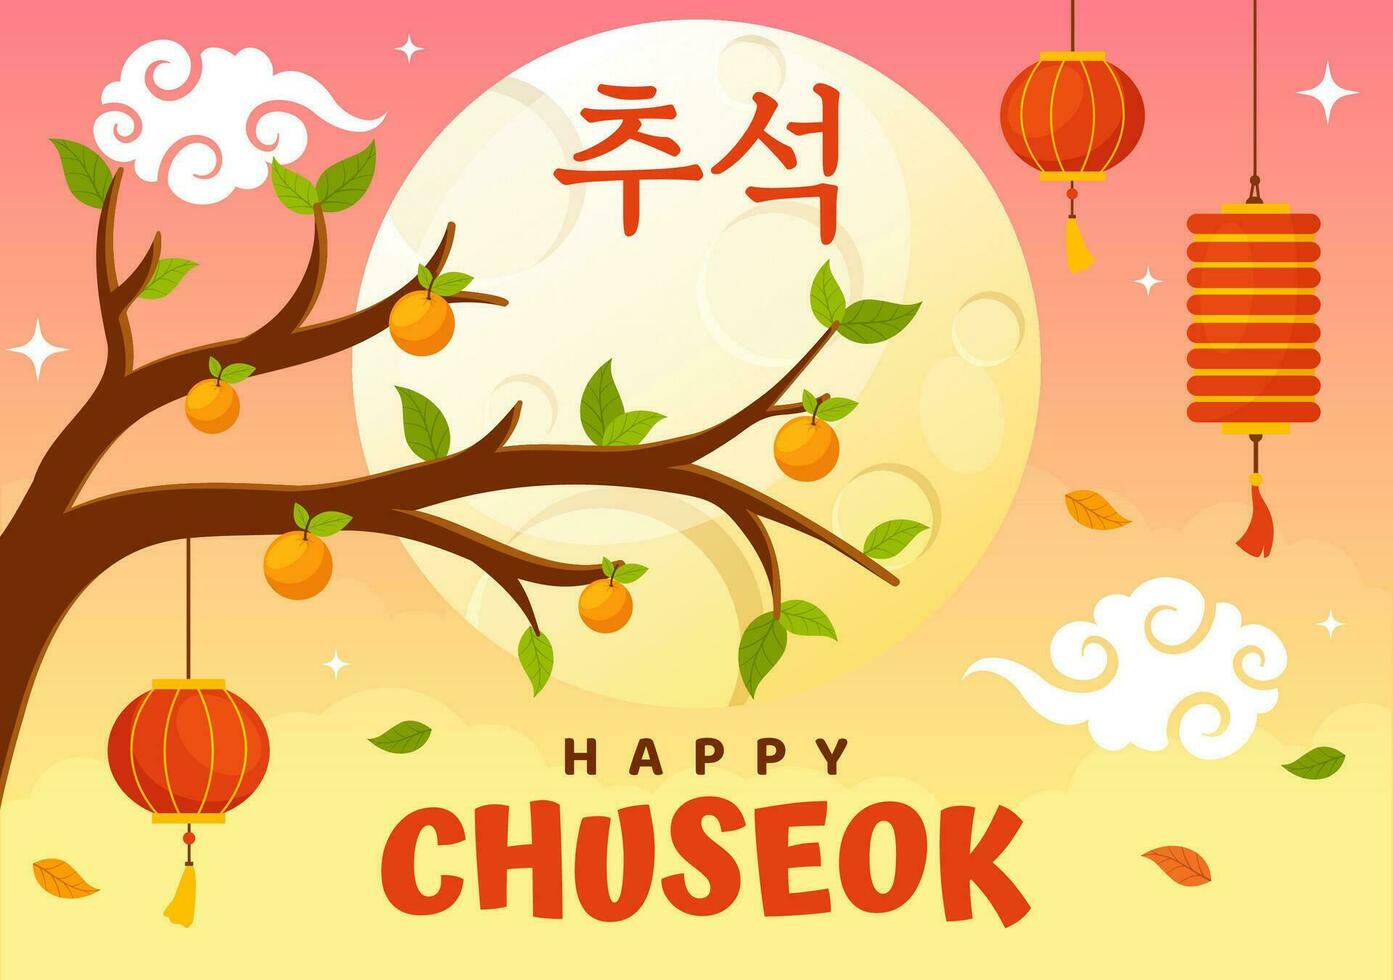 contento Chuseok día vector ilustración de coreano acción de gracias evento con cosecha festival celebrar en otoño noche antecedentes mano dibujado plantillas